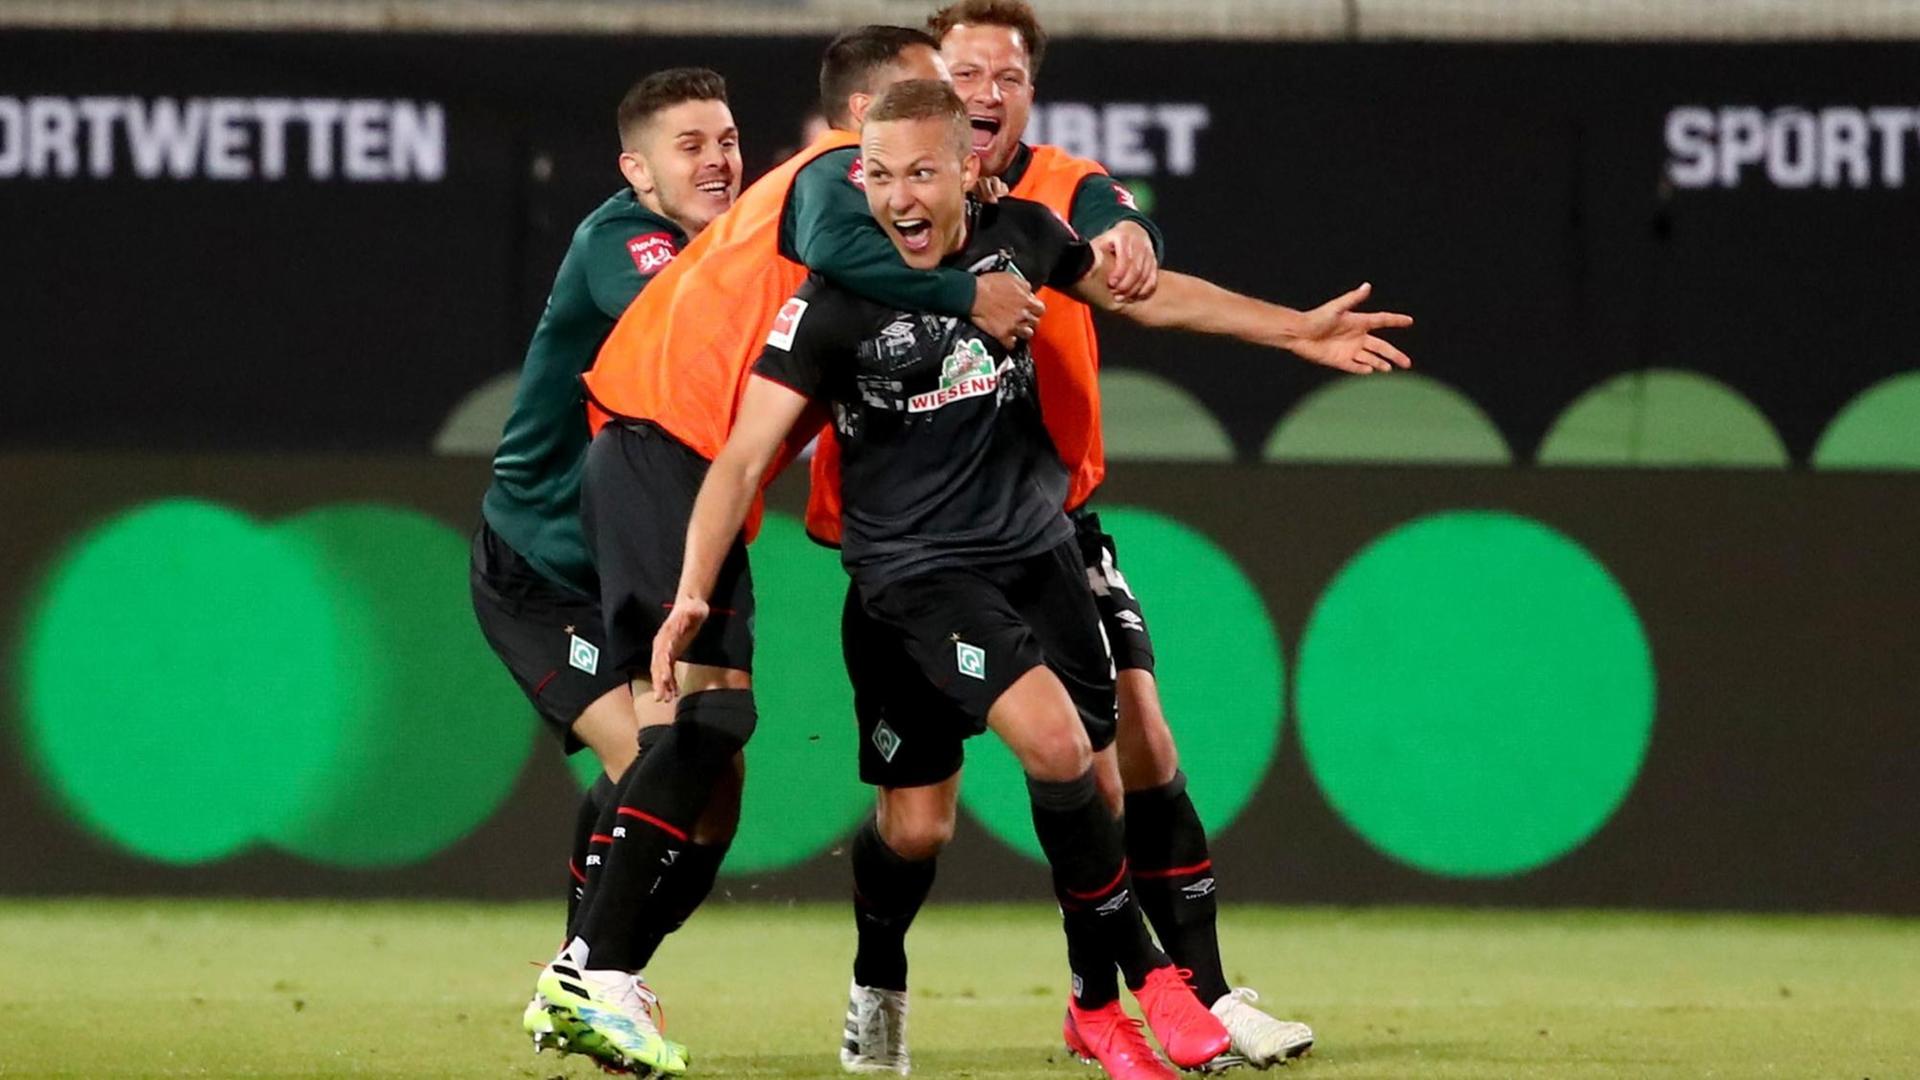 Spieler von Werder Bremen feiern auf dem Fußball-Feld.